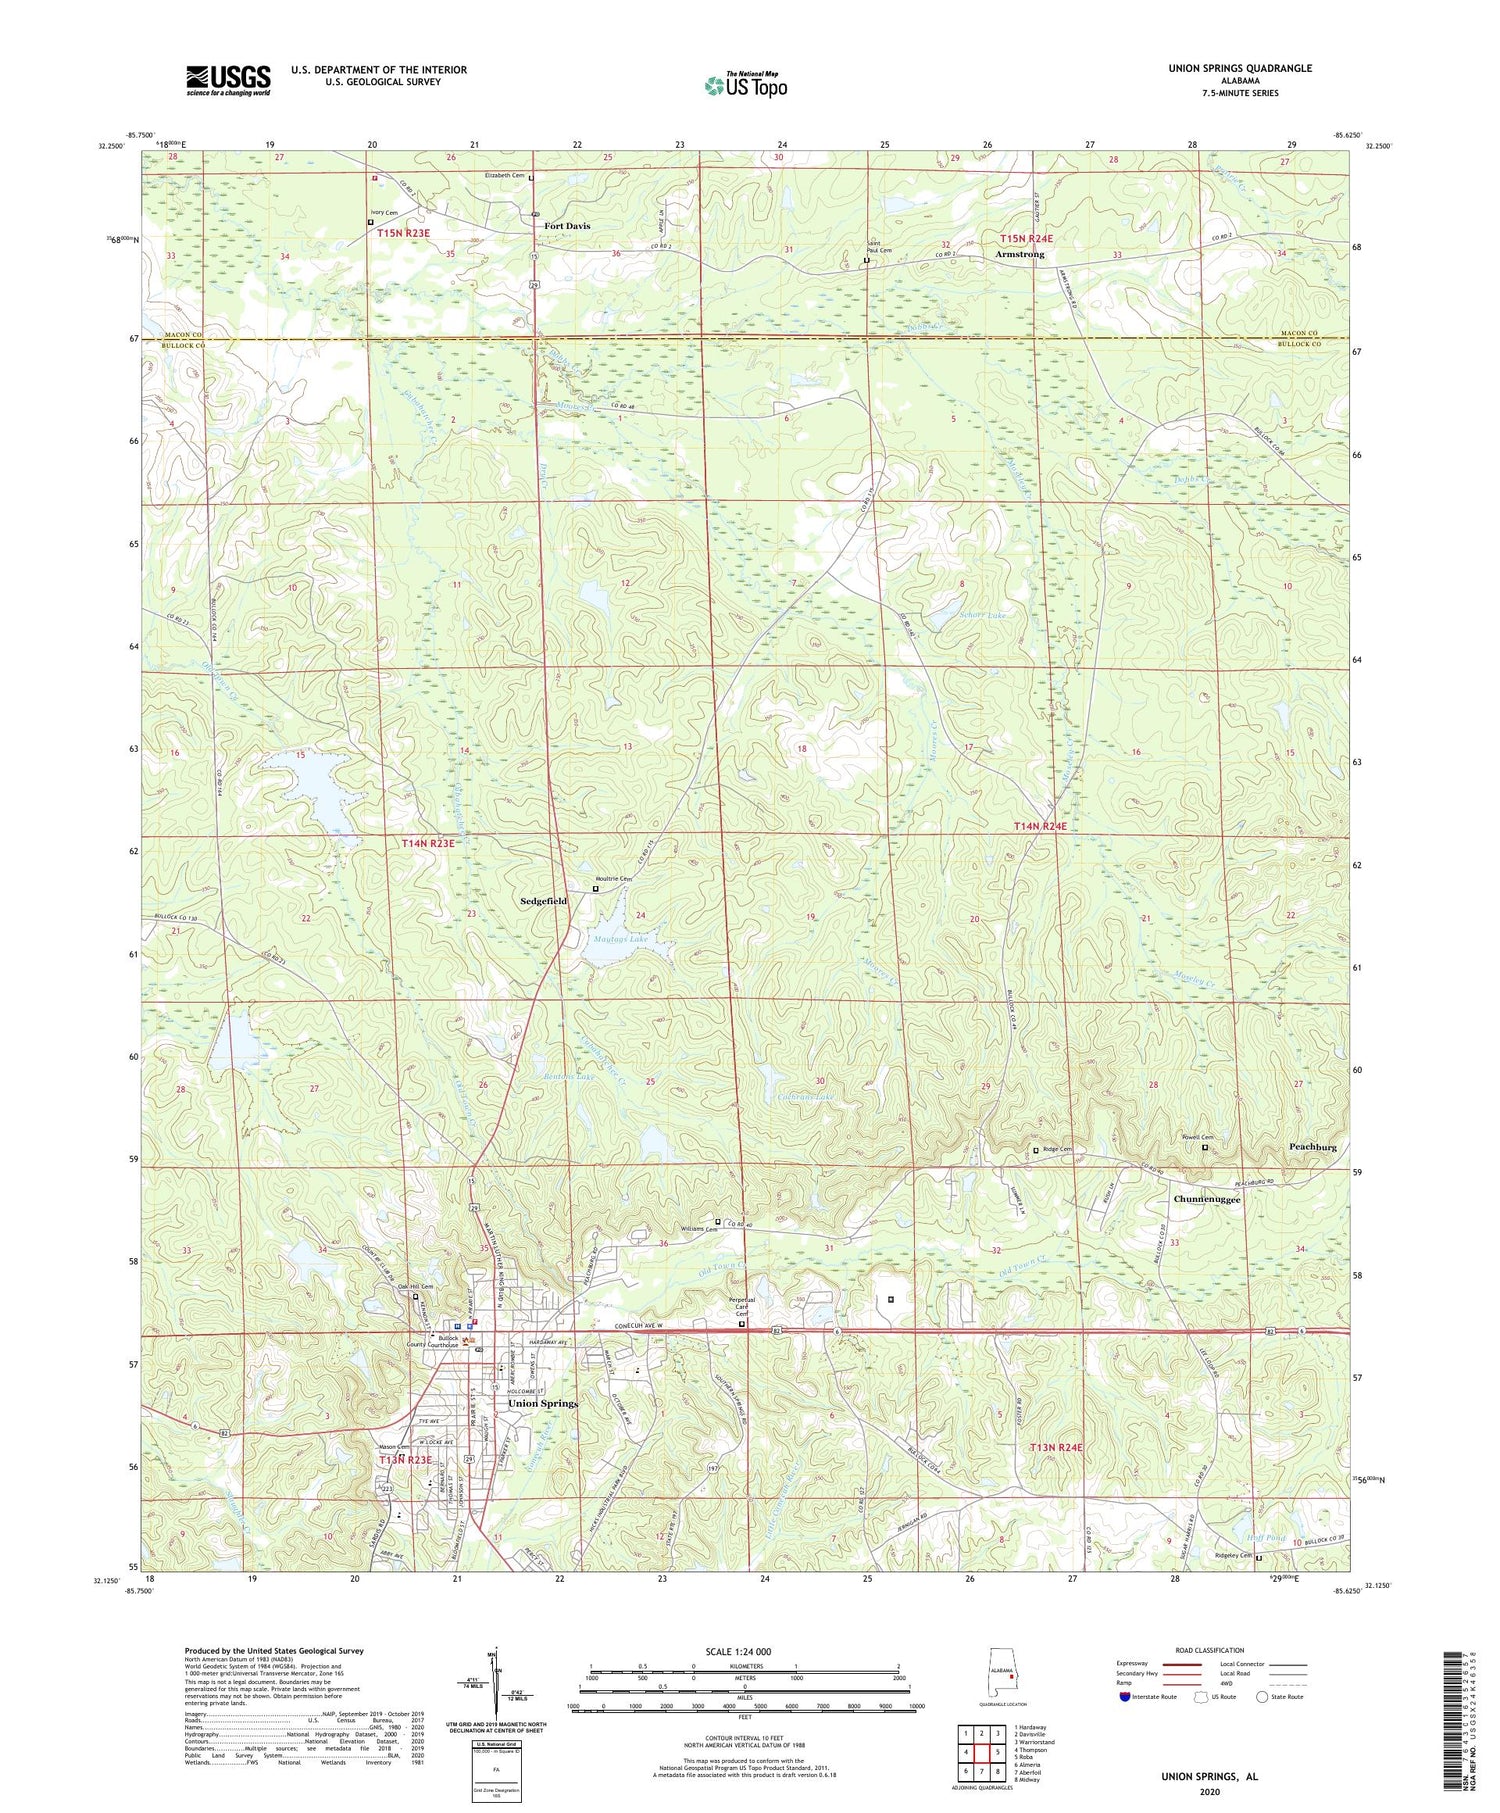 Union Springs Alabama US Topo Map Image